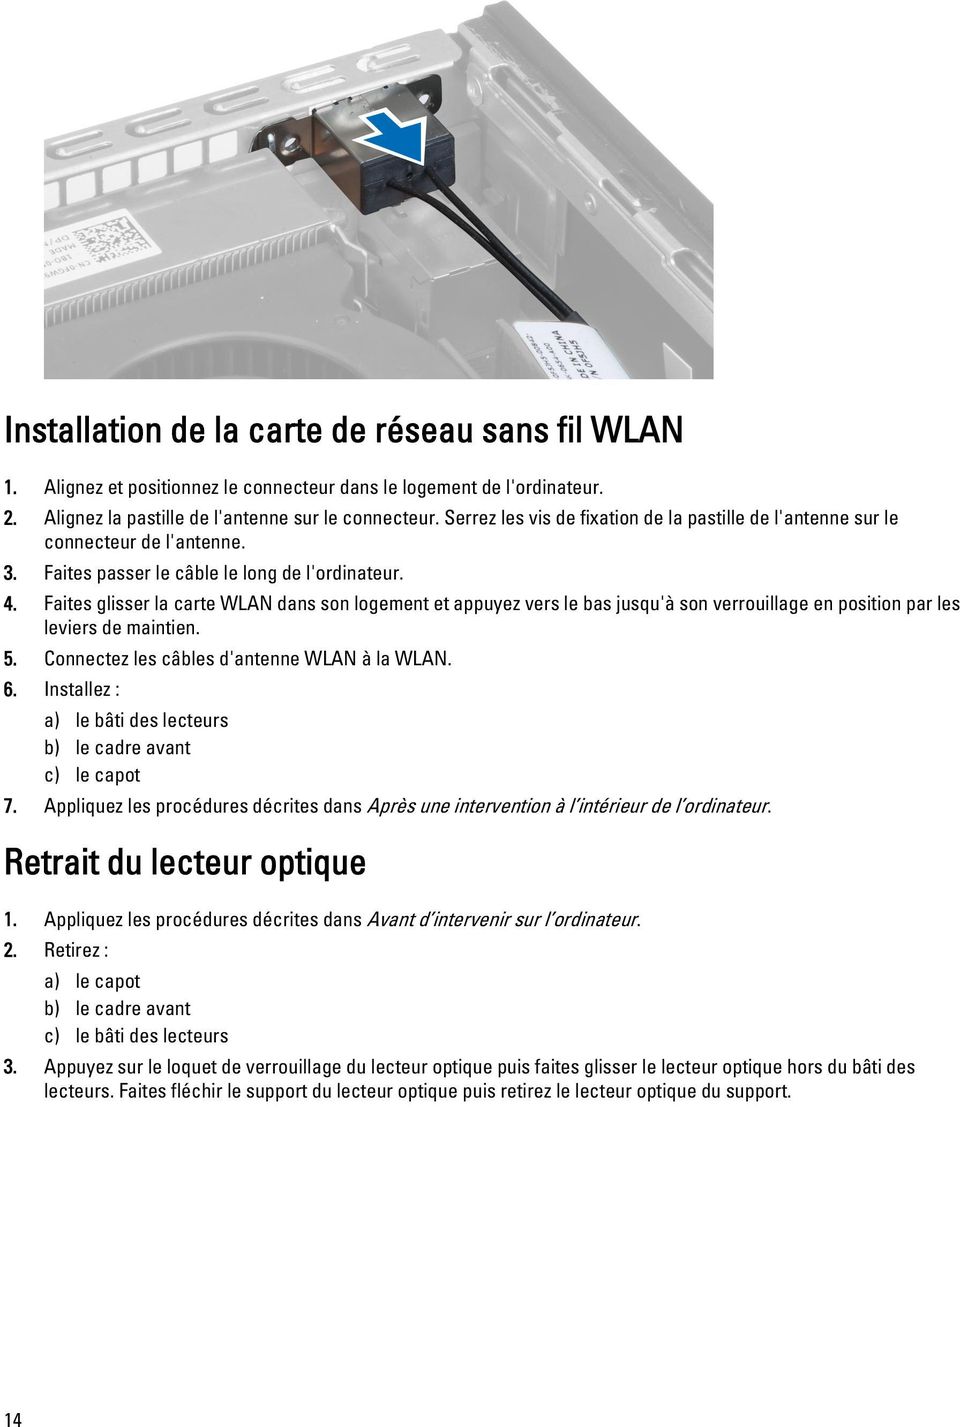 Faites glisser la carte WLAN dans son logement et appuyez vers le bas jusqu'à son verrouillage en position par les leviers de maintien. 5. Connectez les câbles d'antenne WLAN à la WLAN. 6.